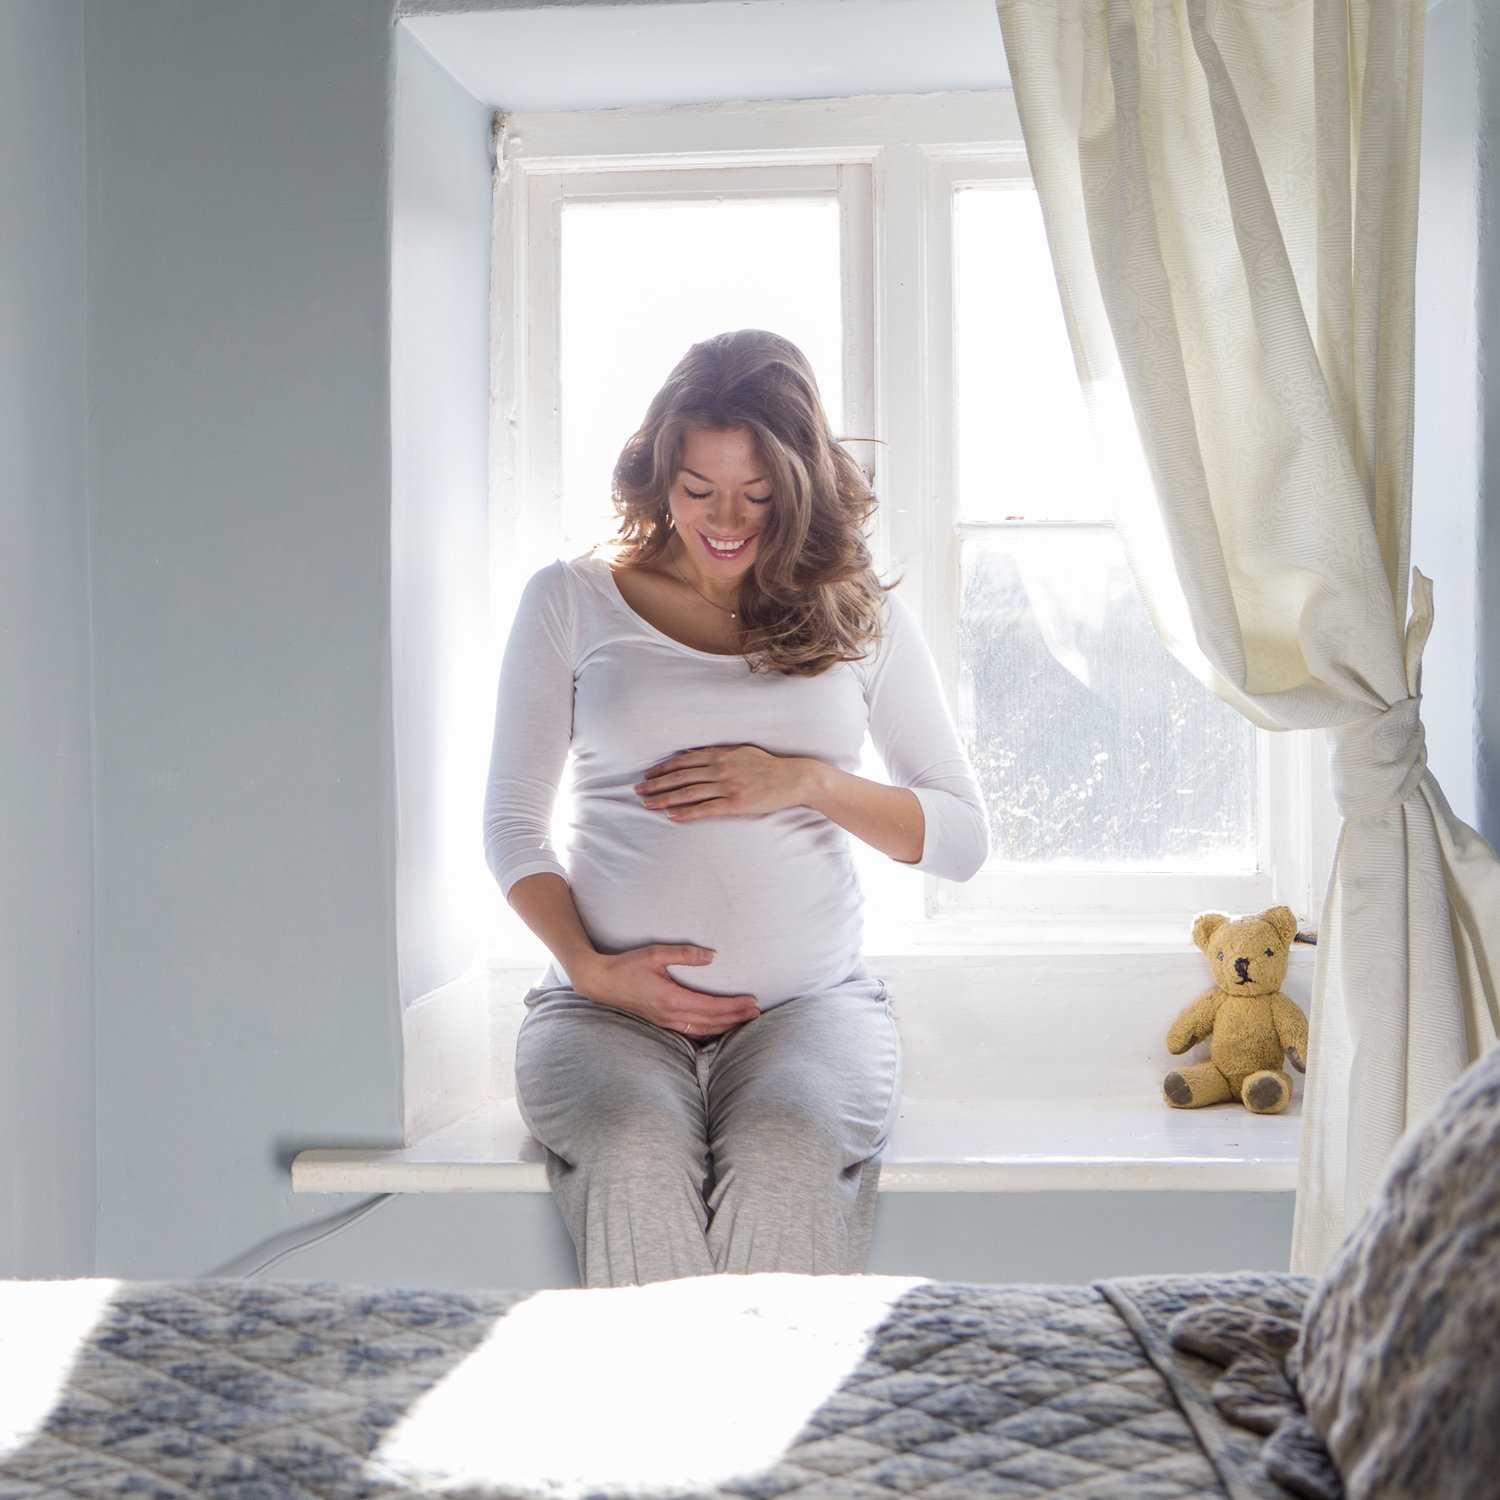 26 неделя беременности: развитие плода и ощущения женщины